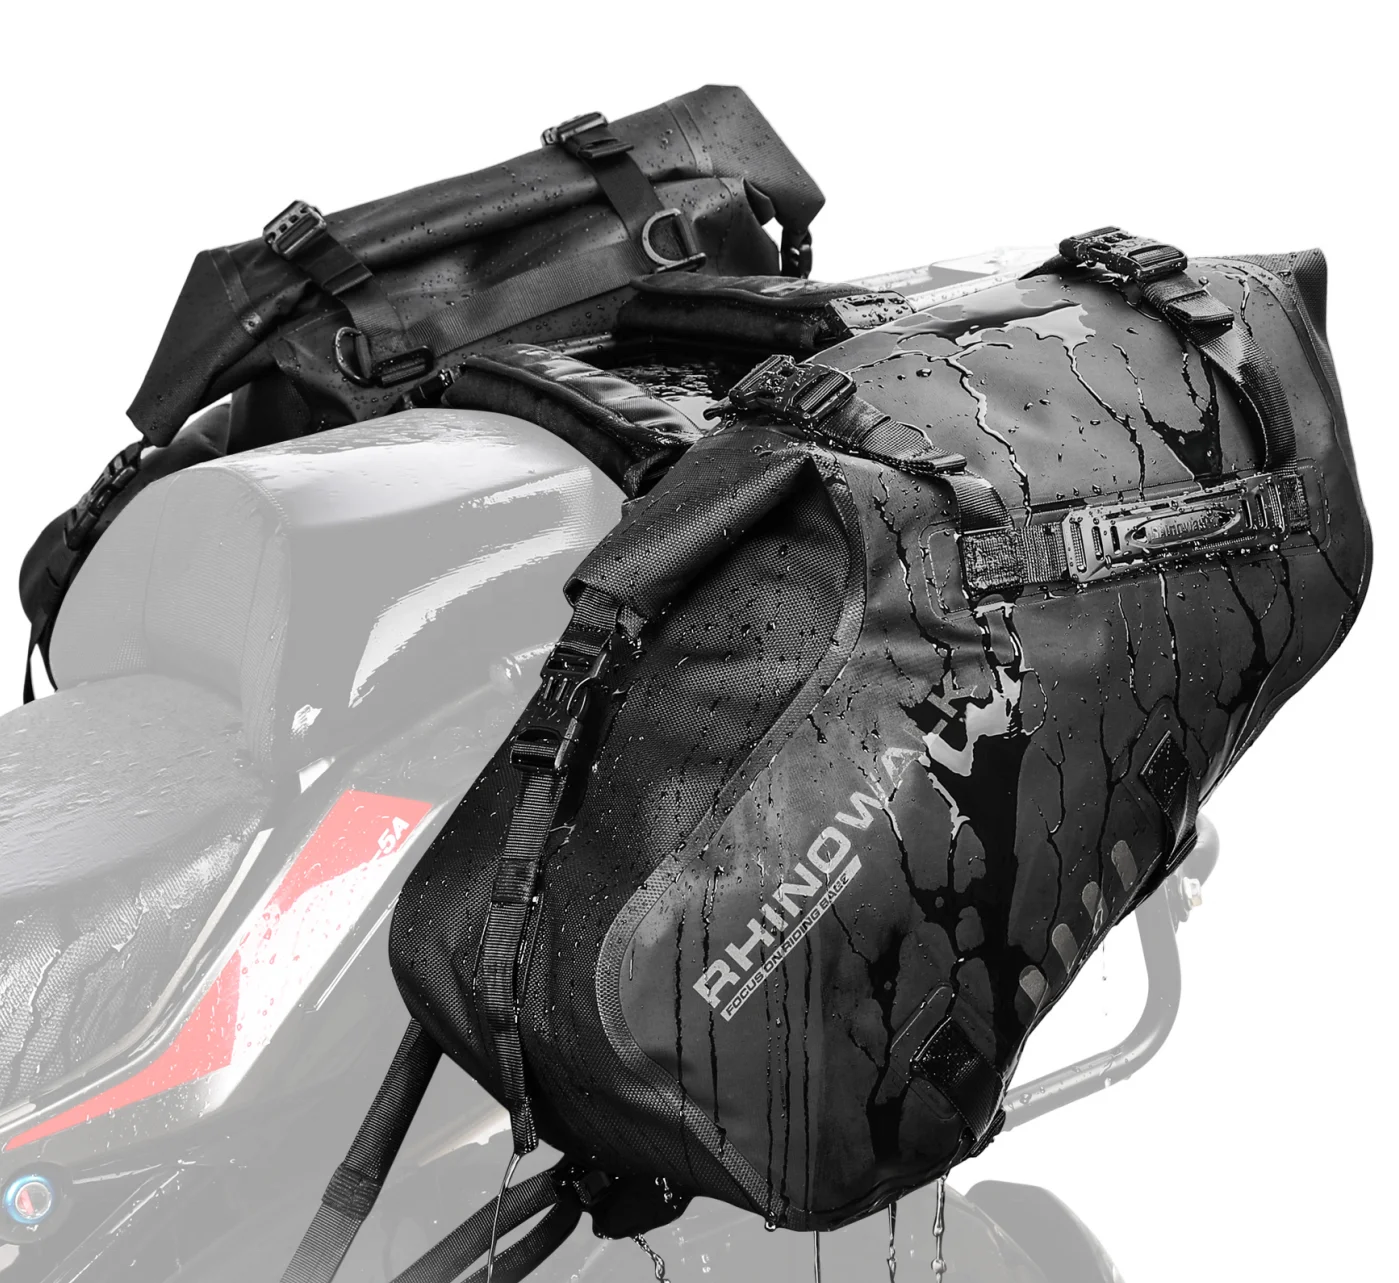 

Rhinowalk Motorcycle Pannier Pair Bag Drift Bike Saddle Seat Bag for Motorcycle Luggage Touring Adventure